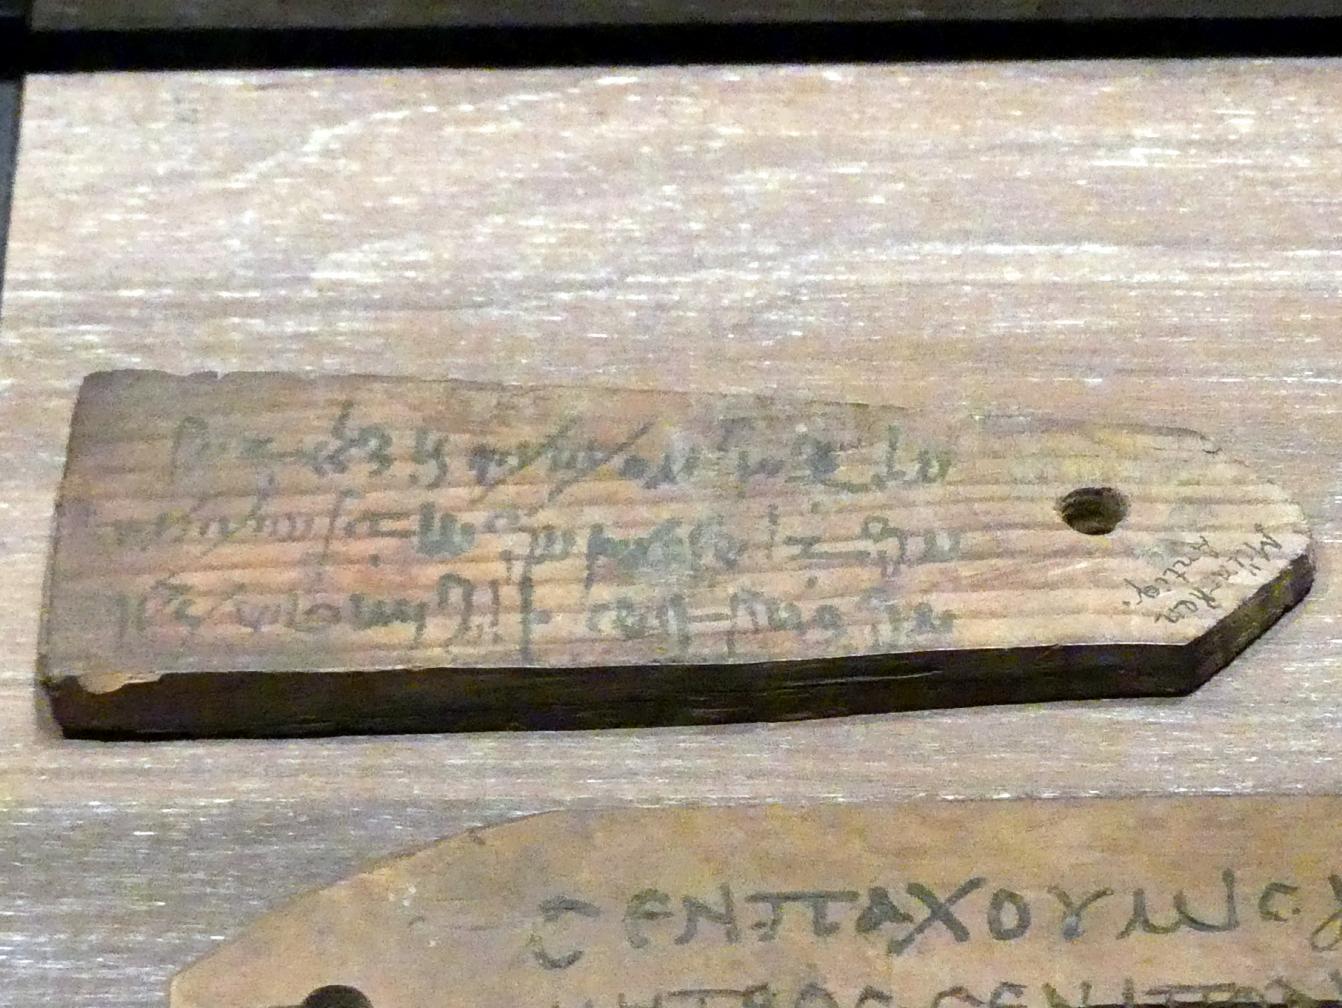 Etikette in Demotisch zur namentlichen Kennzeichnung einer Mumie, Römische Kaiserzeit, 27 v. Chr. - 54 n. Chr., 100 - 200, Bild 1/2